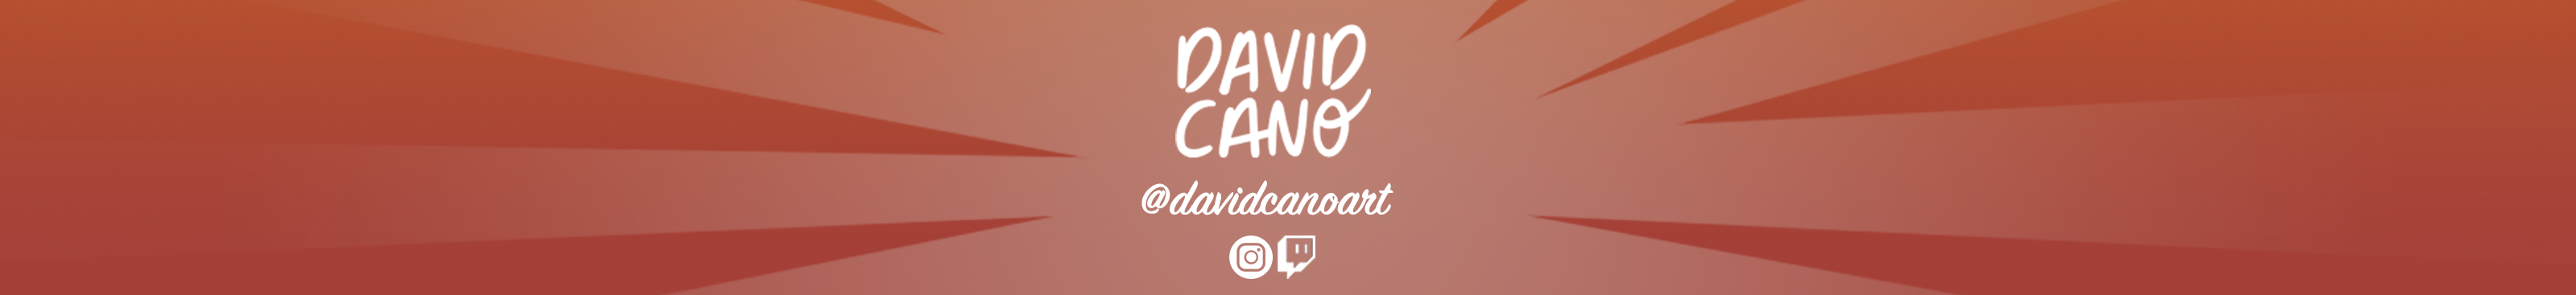 David Cano's profile banner